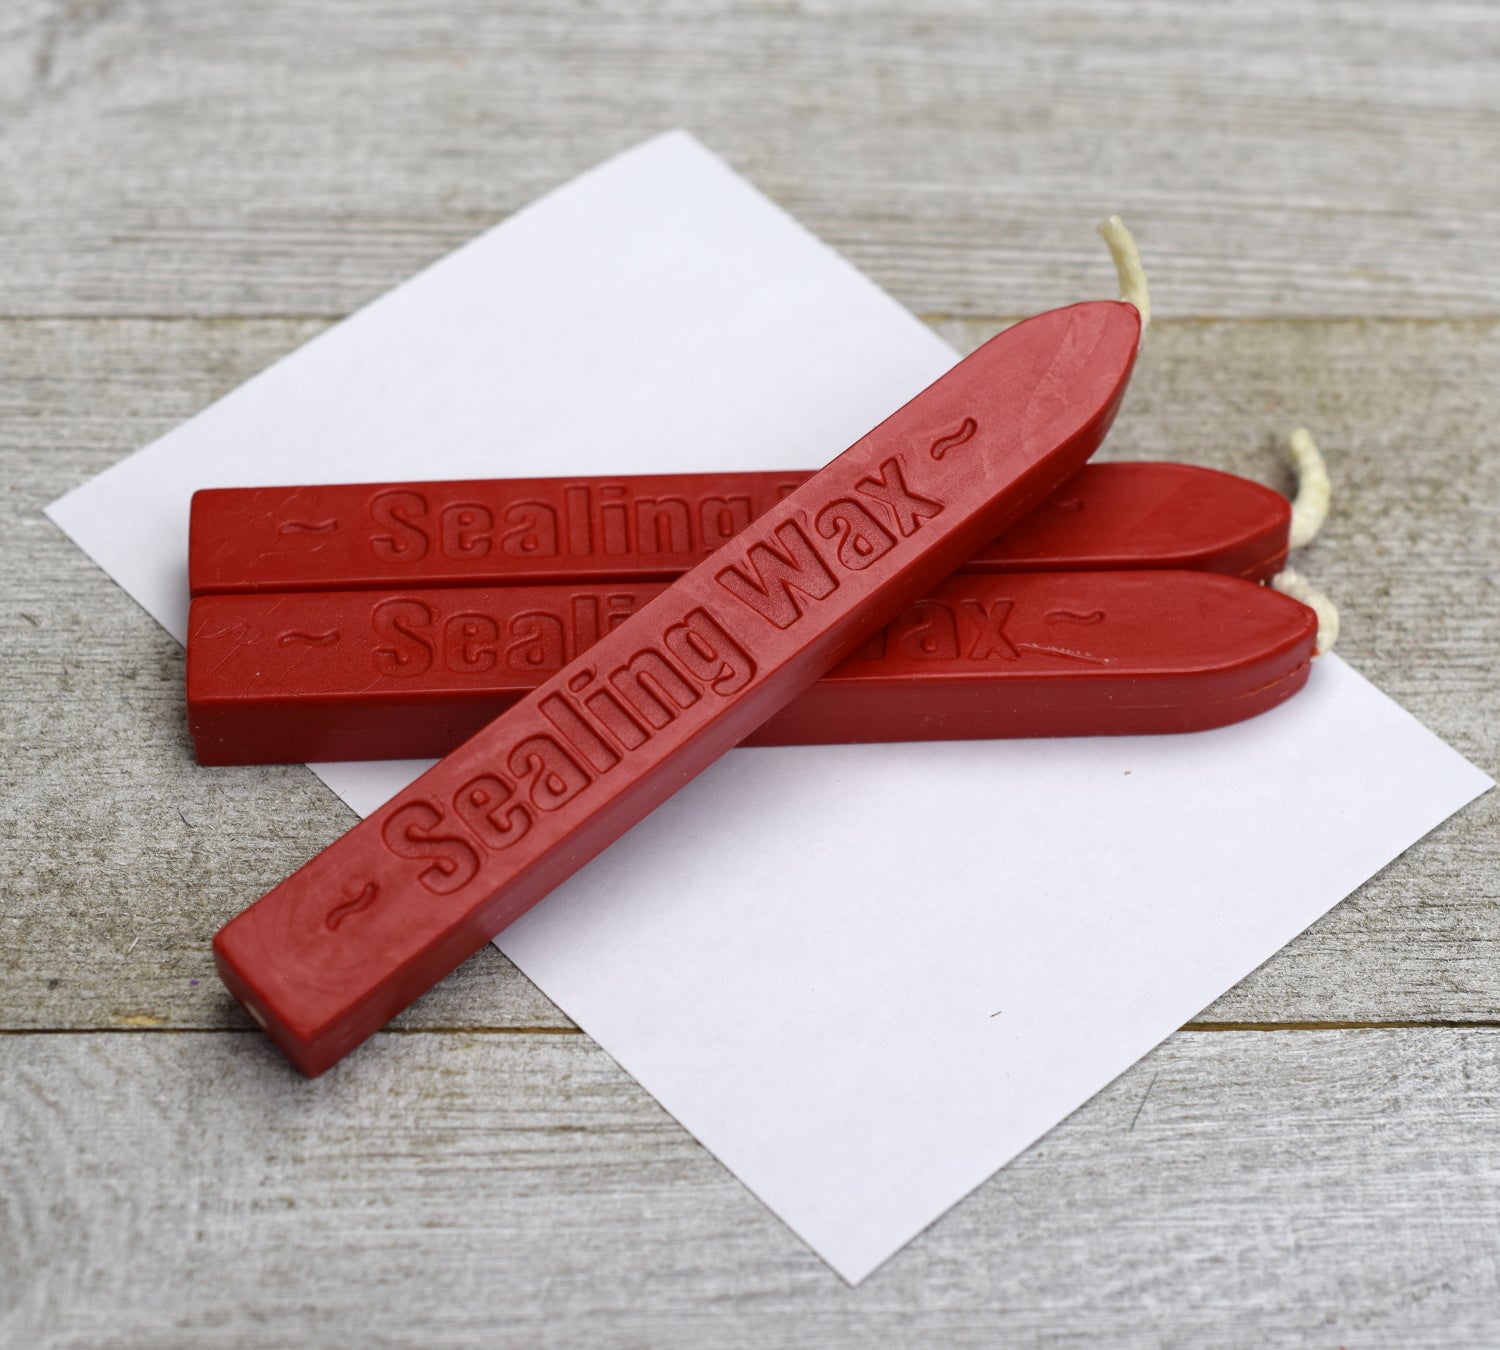 Metallic Red Sealing Wax Sticks, Yoption 5 Pcs Totem Fire Manuscript Wax  Seal Sticks with Wicks for Wax Seal Stamp (Metallic Red)